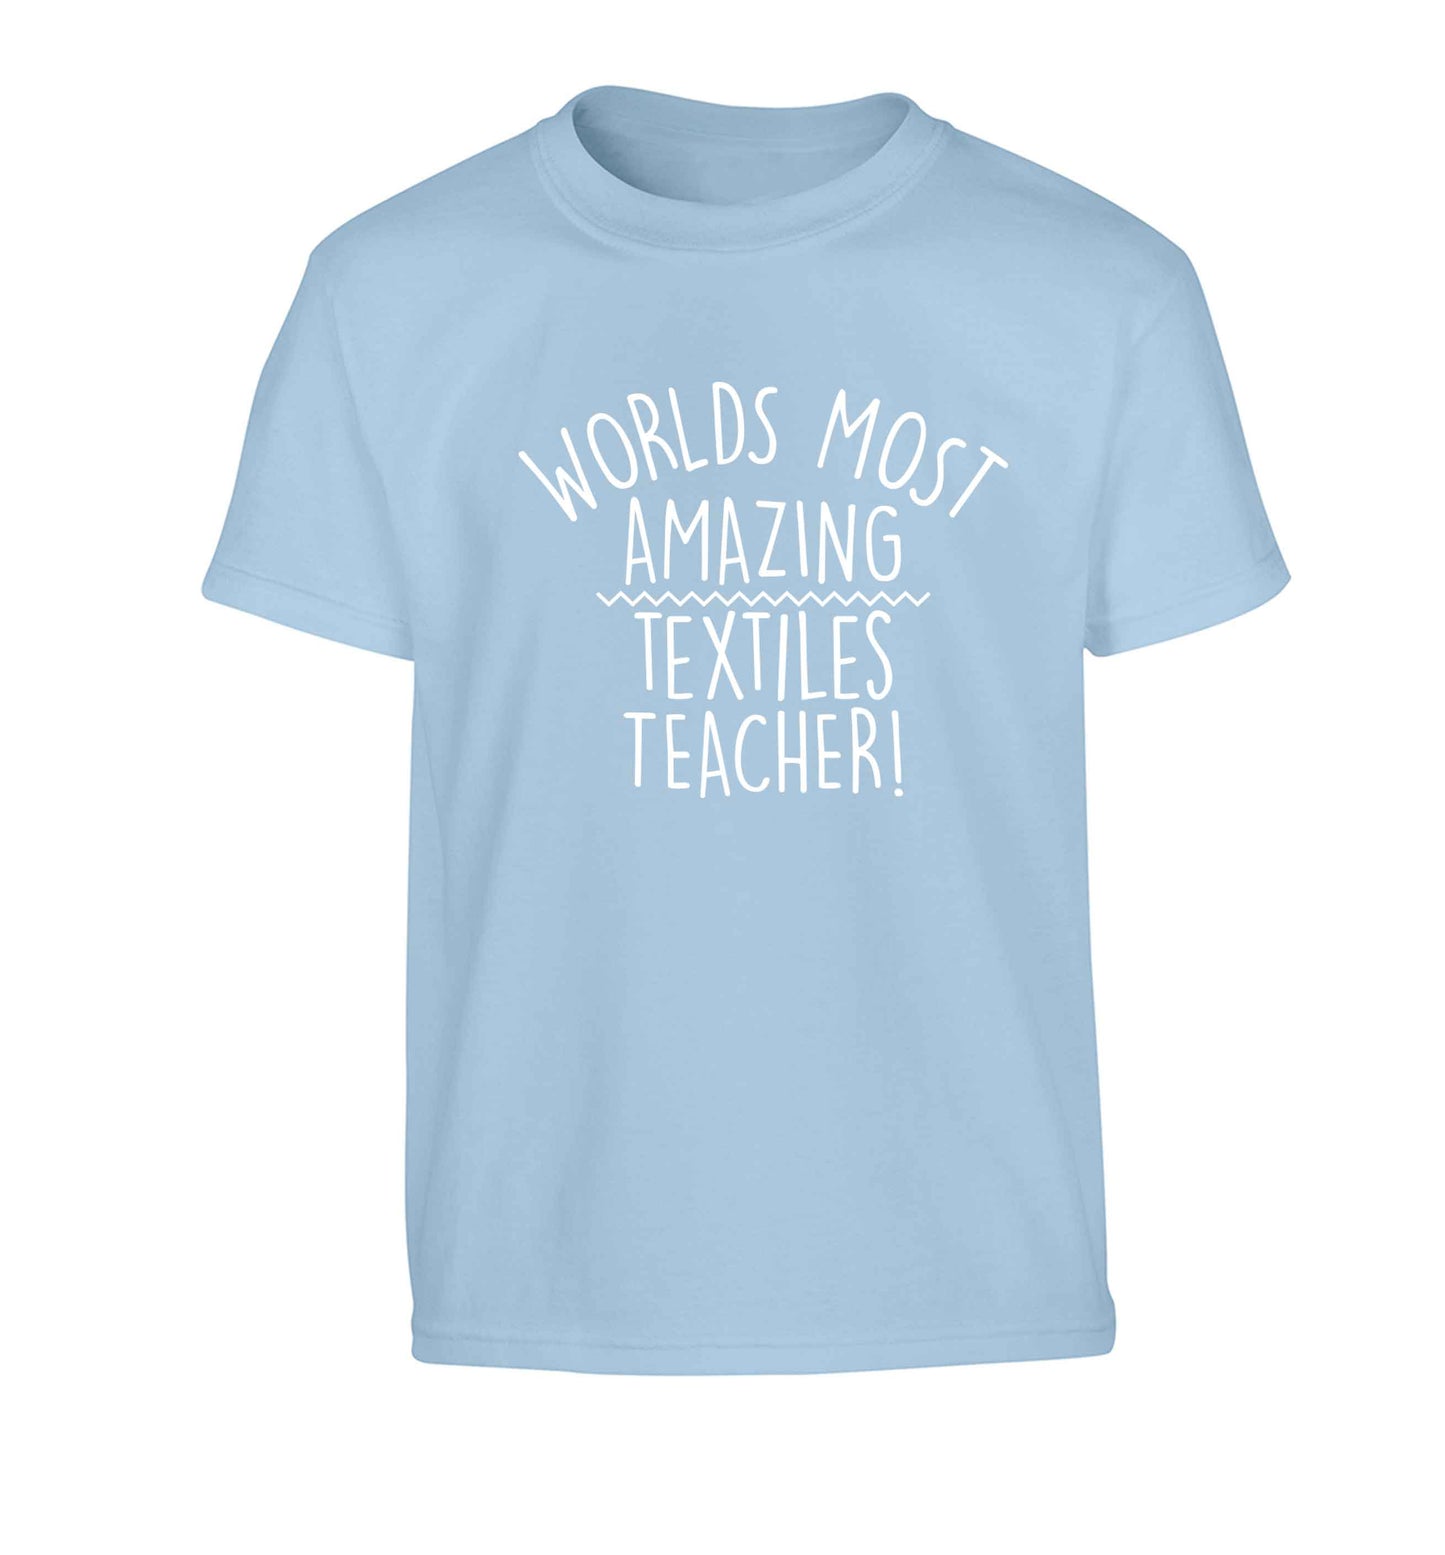 Worlds most amazing textiles teacher Children's light blue Tshirt 12-13 Years